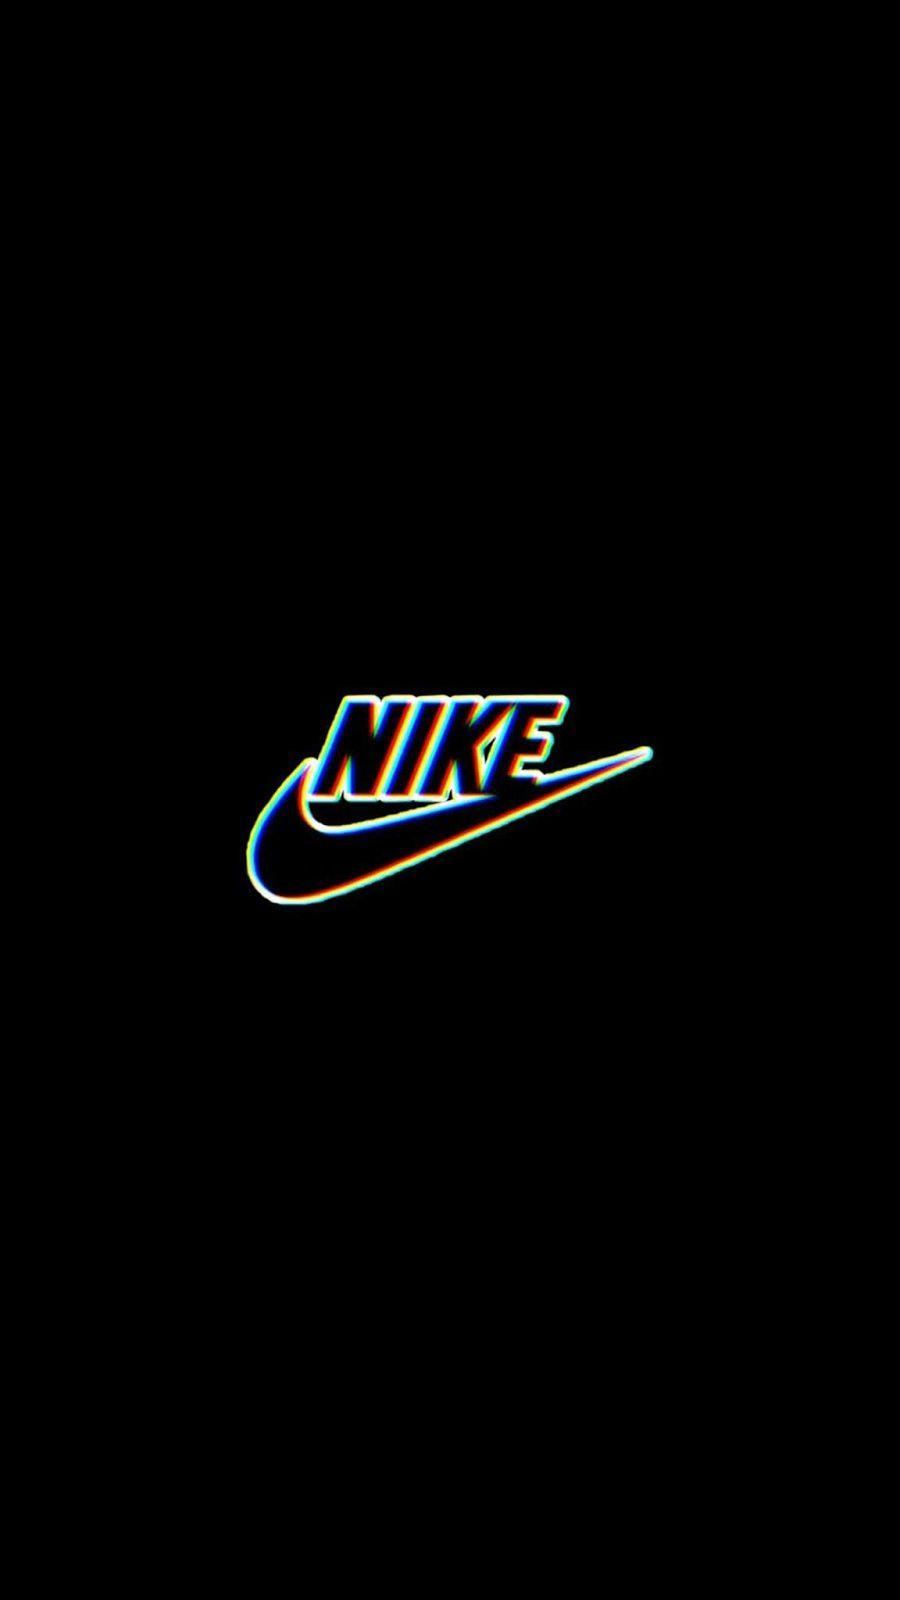 Hình nền đen Nike luôn mang đến cảm giác ấn tượng và đẳng cấp. Với chất lượng ảnh tuyệt vời và độ phân giải cao, bạn có thể tìm được bức hình đen Nike phù hợp với phong cách và sở thích của bạn. Hãy truy cập ngay để khám phá thế giới hình nền đen Nike!